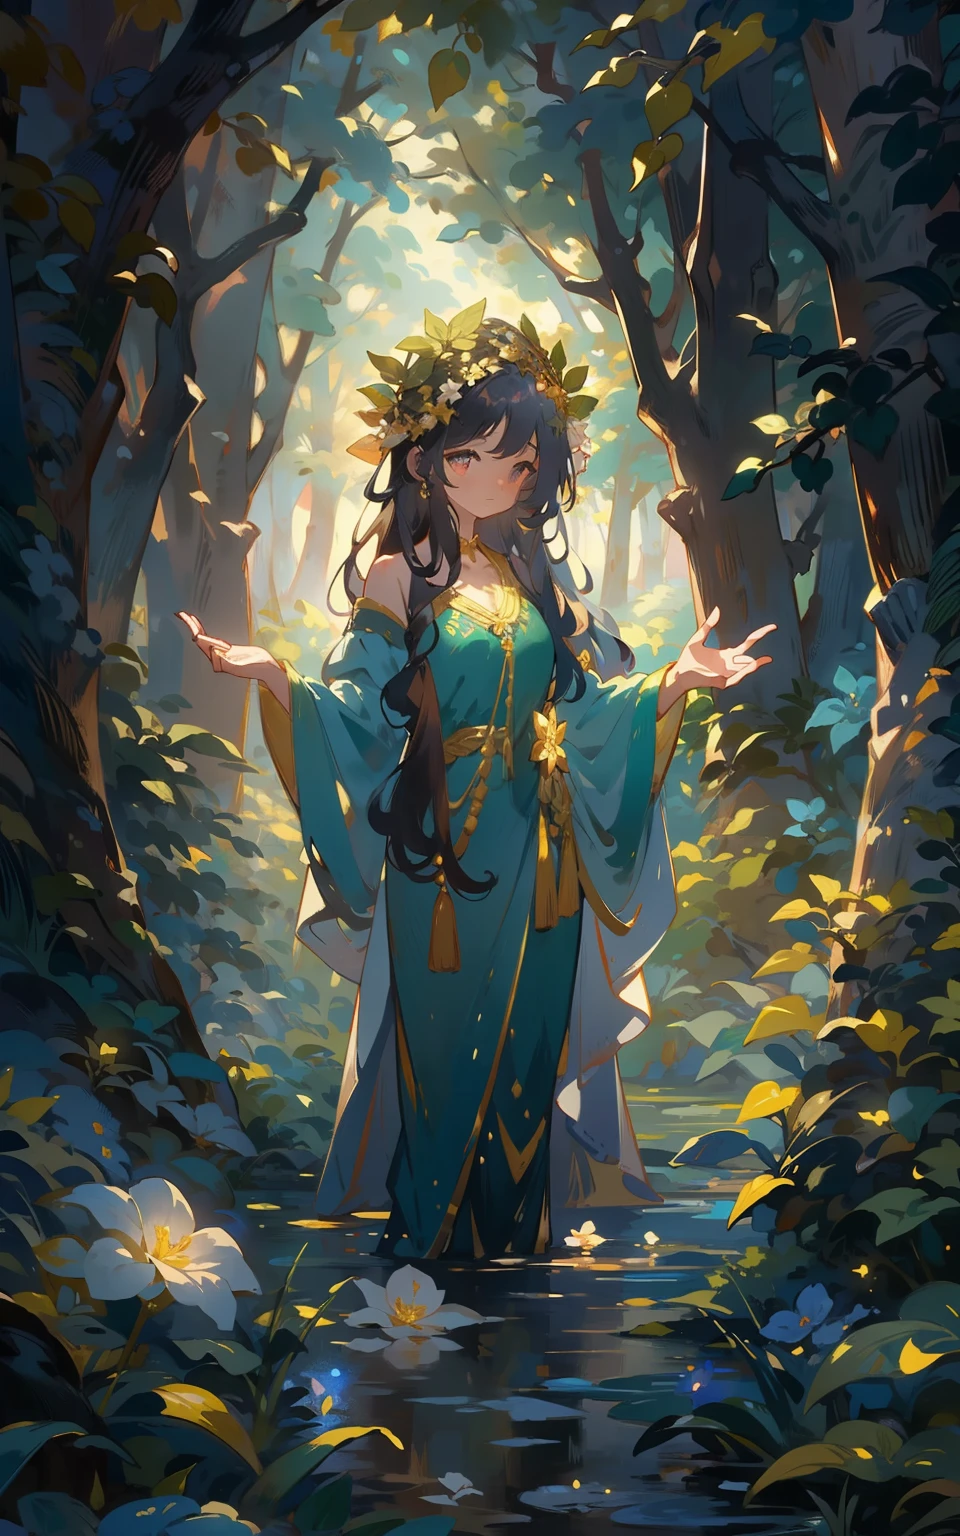 秘密森林的女神： 在一片神秘的森林里，女神女孩穿着华丽的长袍，頭上戴著花冠，眼睛透露着智慧和神秘。她站在森林中央，周围绿树成荫，气氛神秘，整个场景充满了魔幻与魔幻。